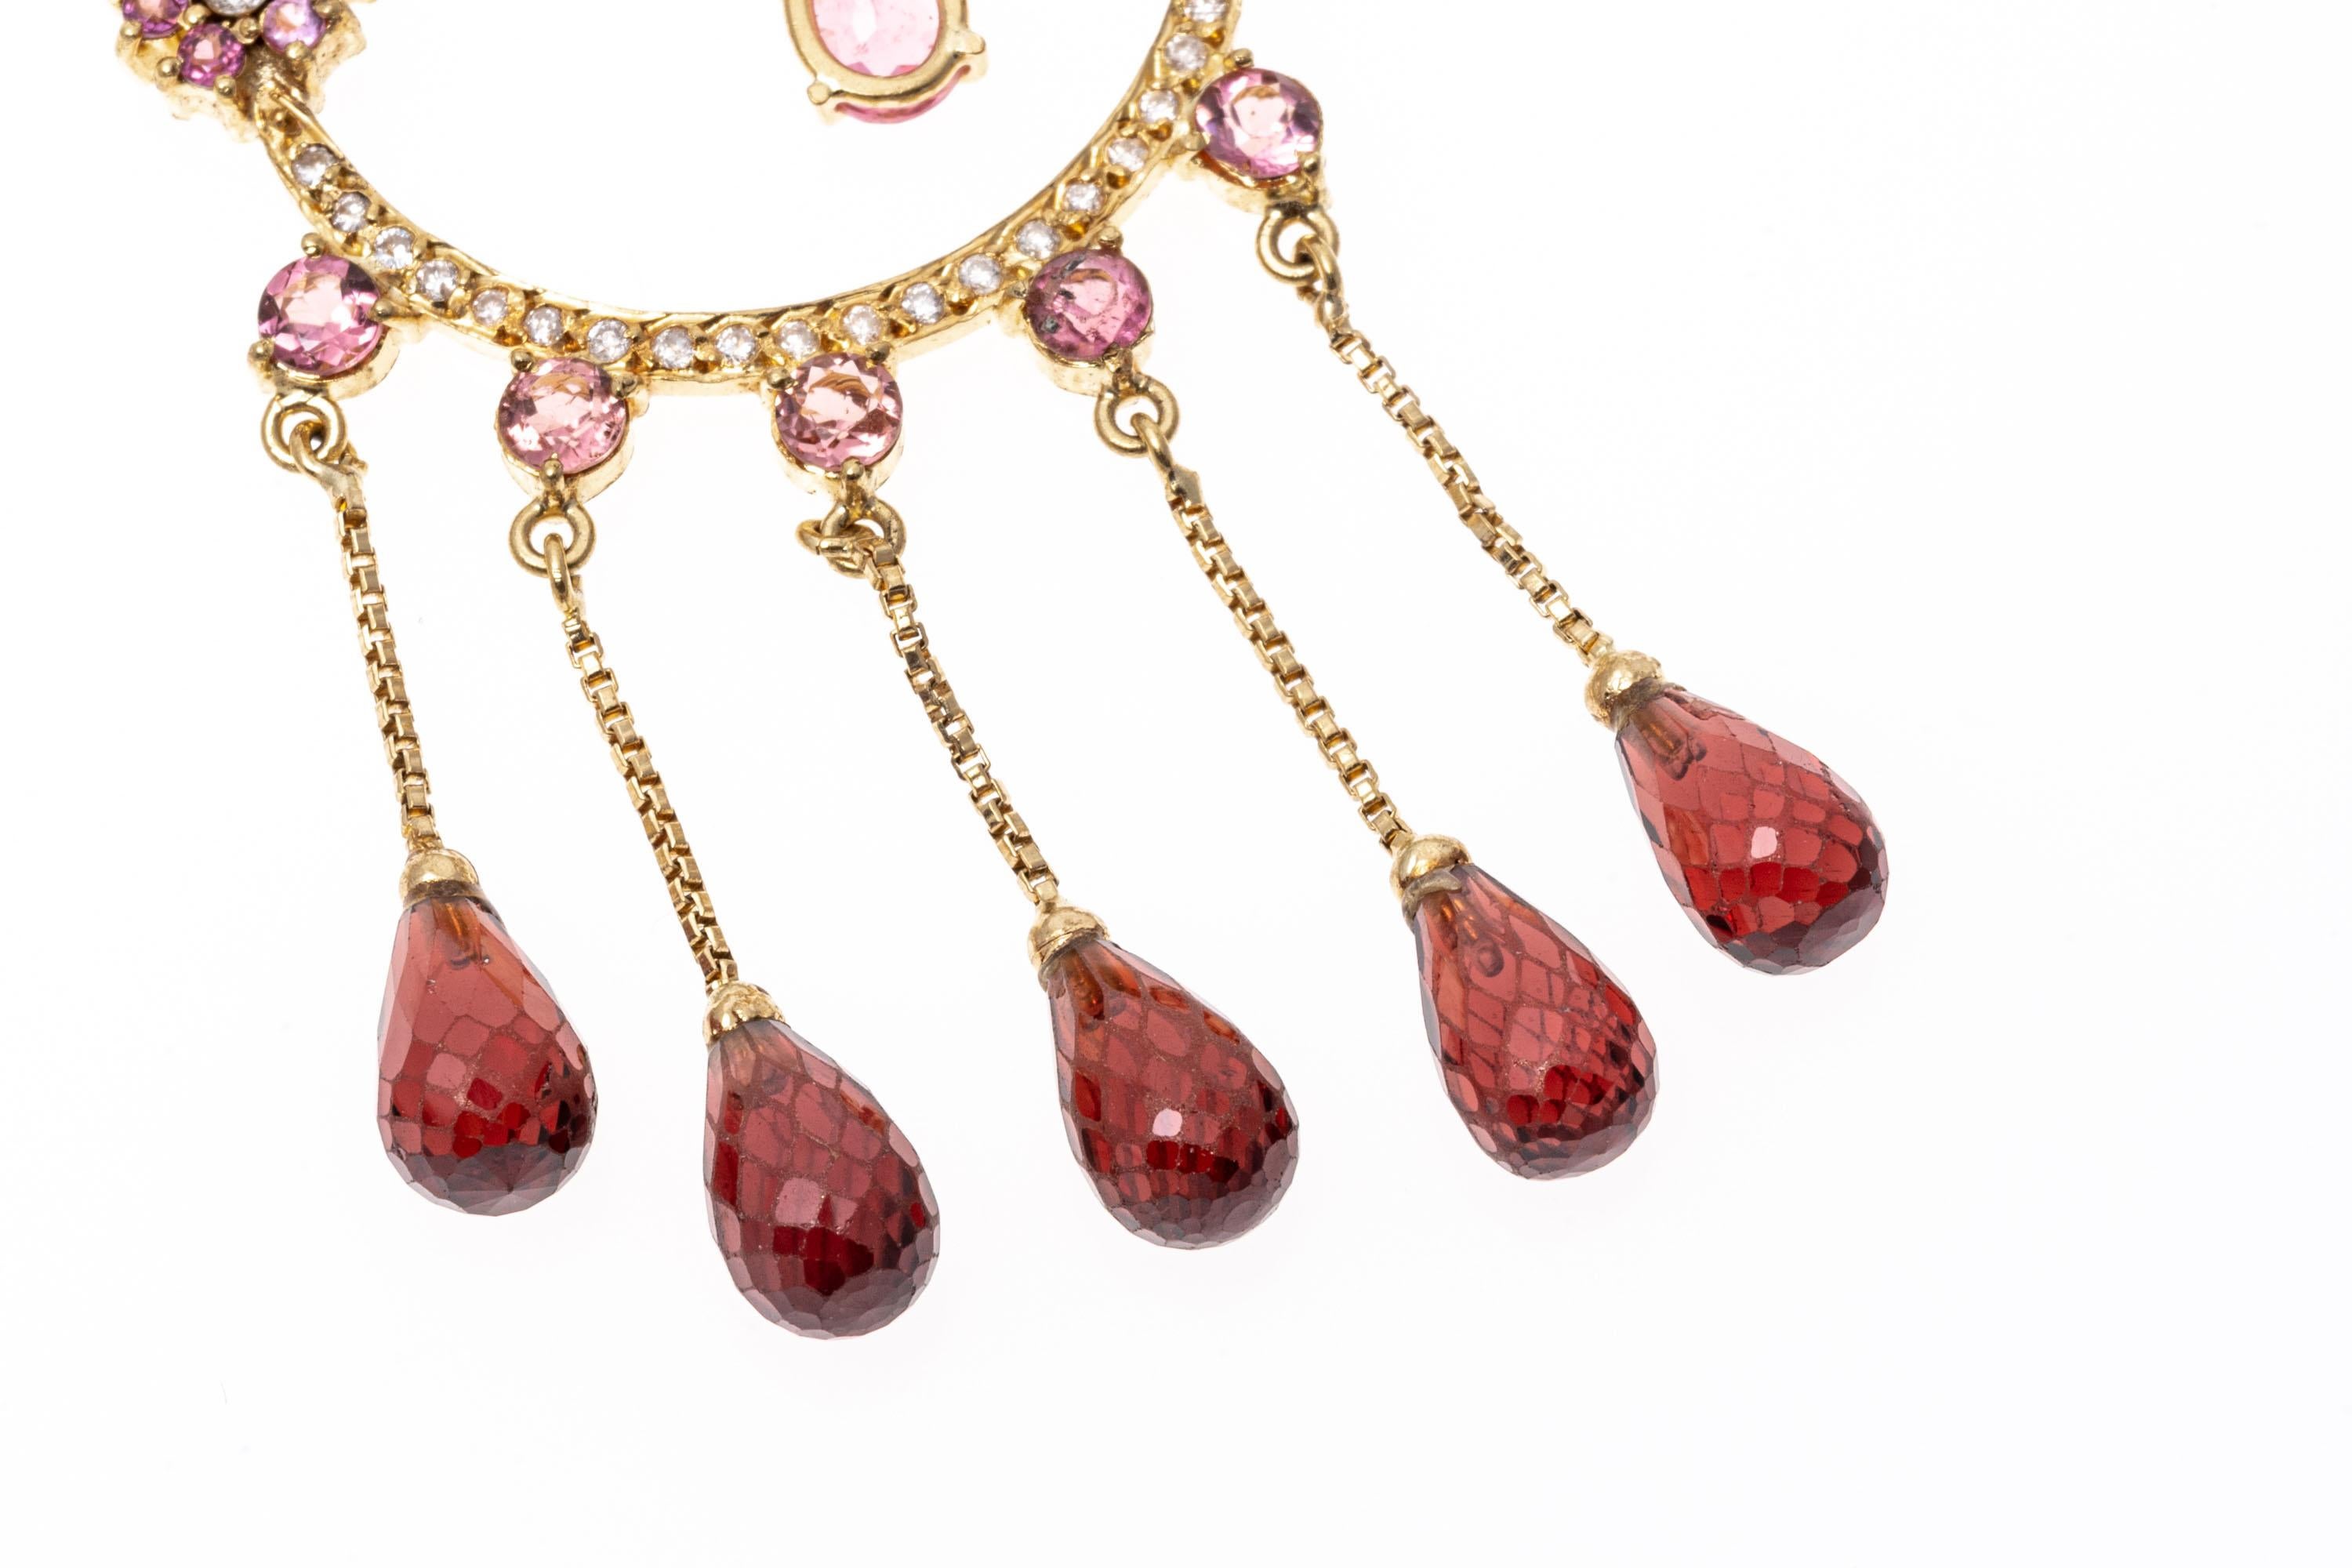 Auffallende 14K Gold, rosa Turmalin, Diamant und Granat Kronleuchter Ohrringe.
Ein wirklich einzigartiges Paar Kronleuchter-Ohrringe, das mit Sicherheit ein auffälliges Statement abgibt. Diese Ohrringe sind aus 14-karätigem Gelbgold gefertigt und